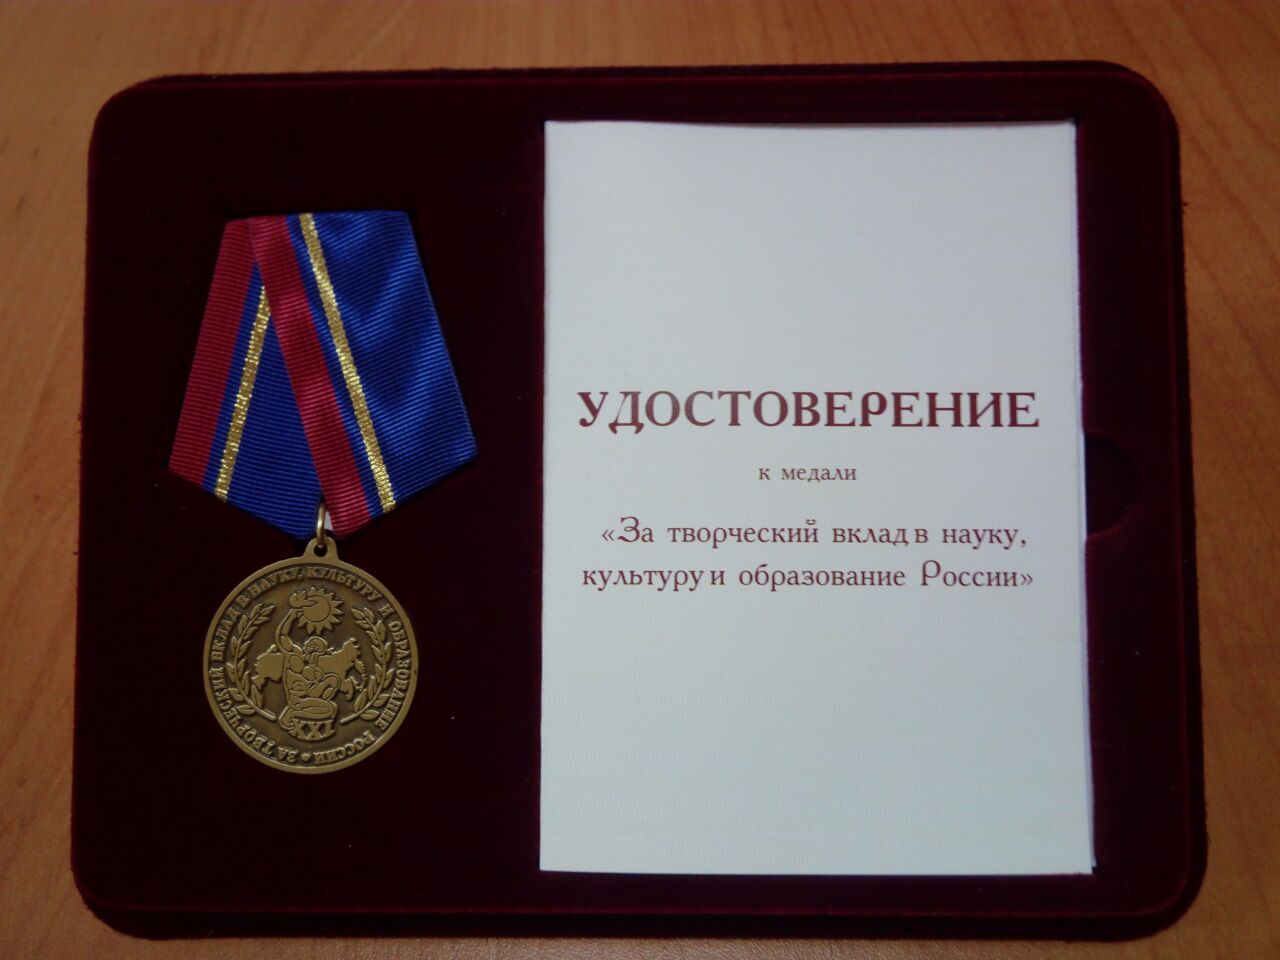 Начальник департамента образования и науки Кемеровской области А.В.Чепкасов награжден медалью за творческий вклад в науку, культуру и образование России  